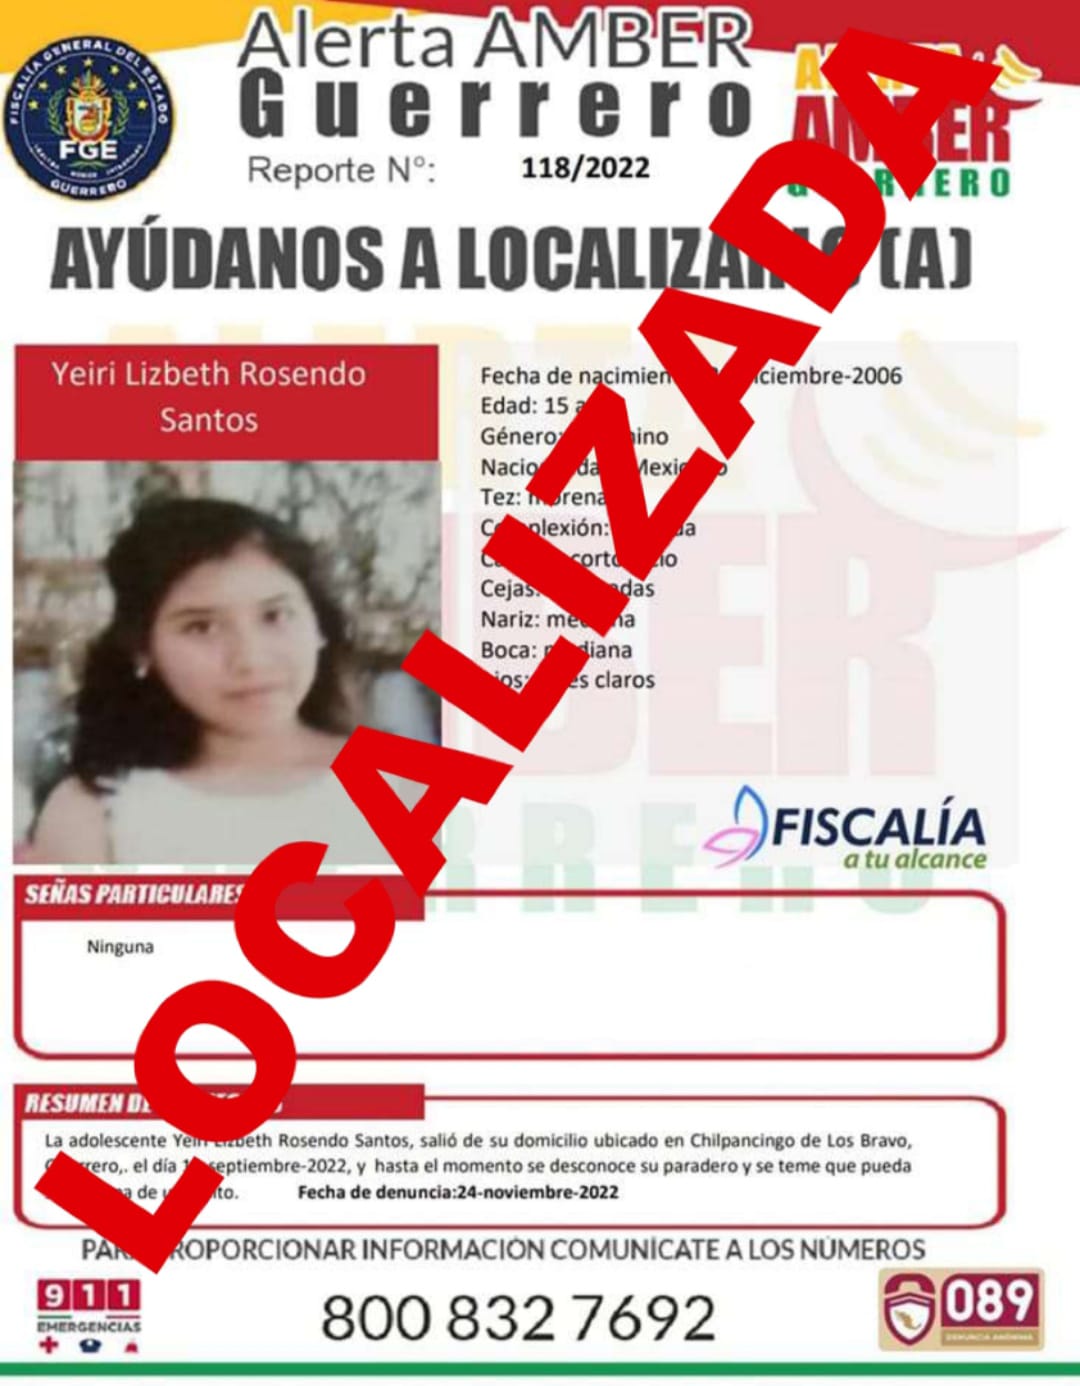 Yeiri Lizbeth Rosendo Santos Ya Fue Localizada.